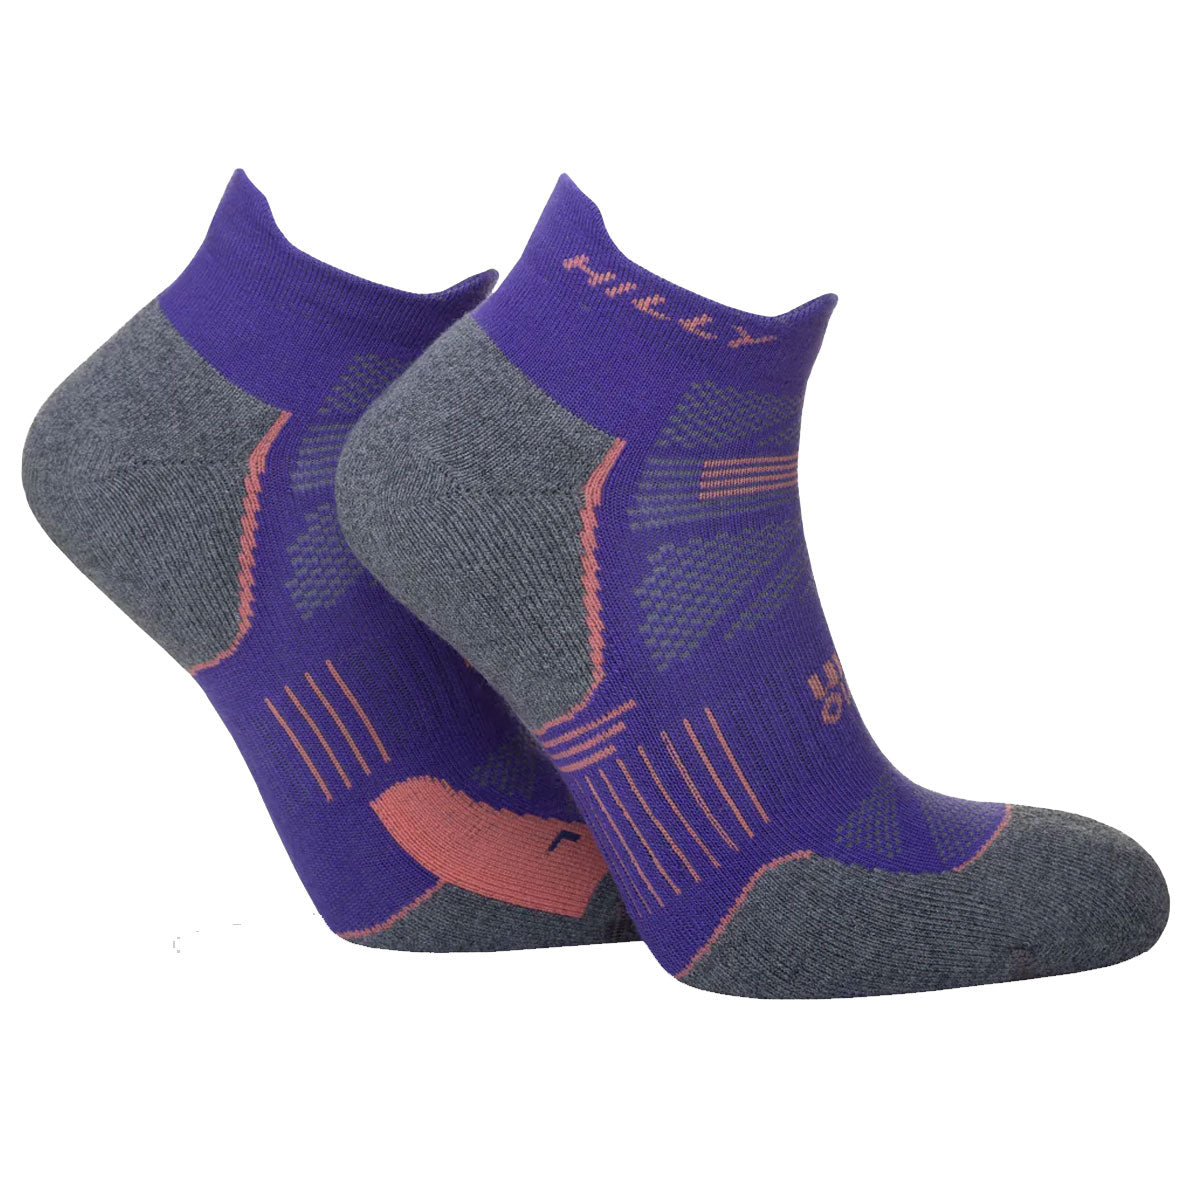 Hilly Supreme Anklet Med Socks - Womens - Plum/Grey Marl